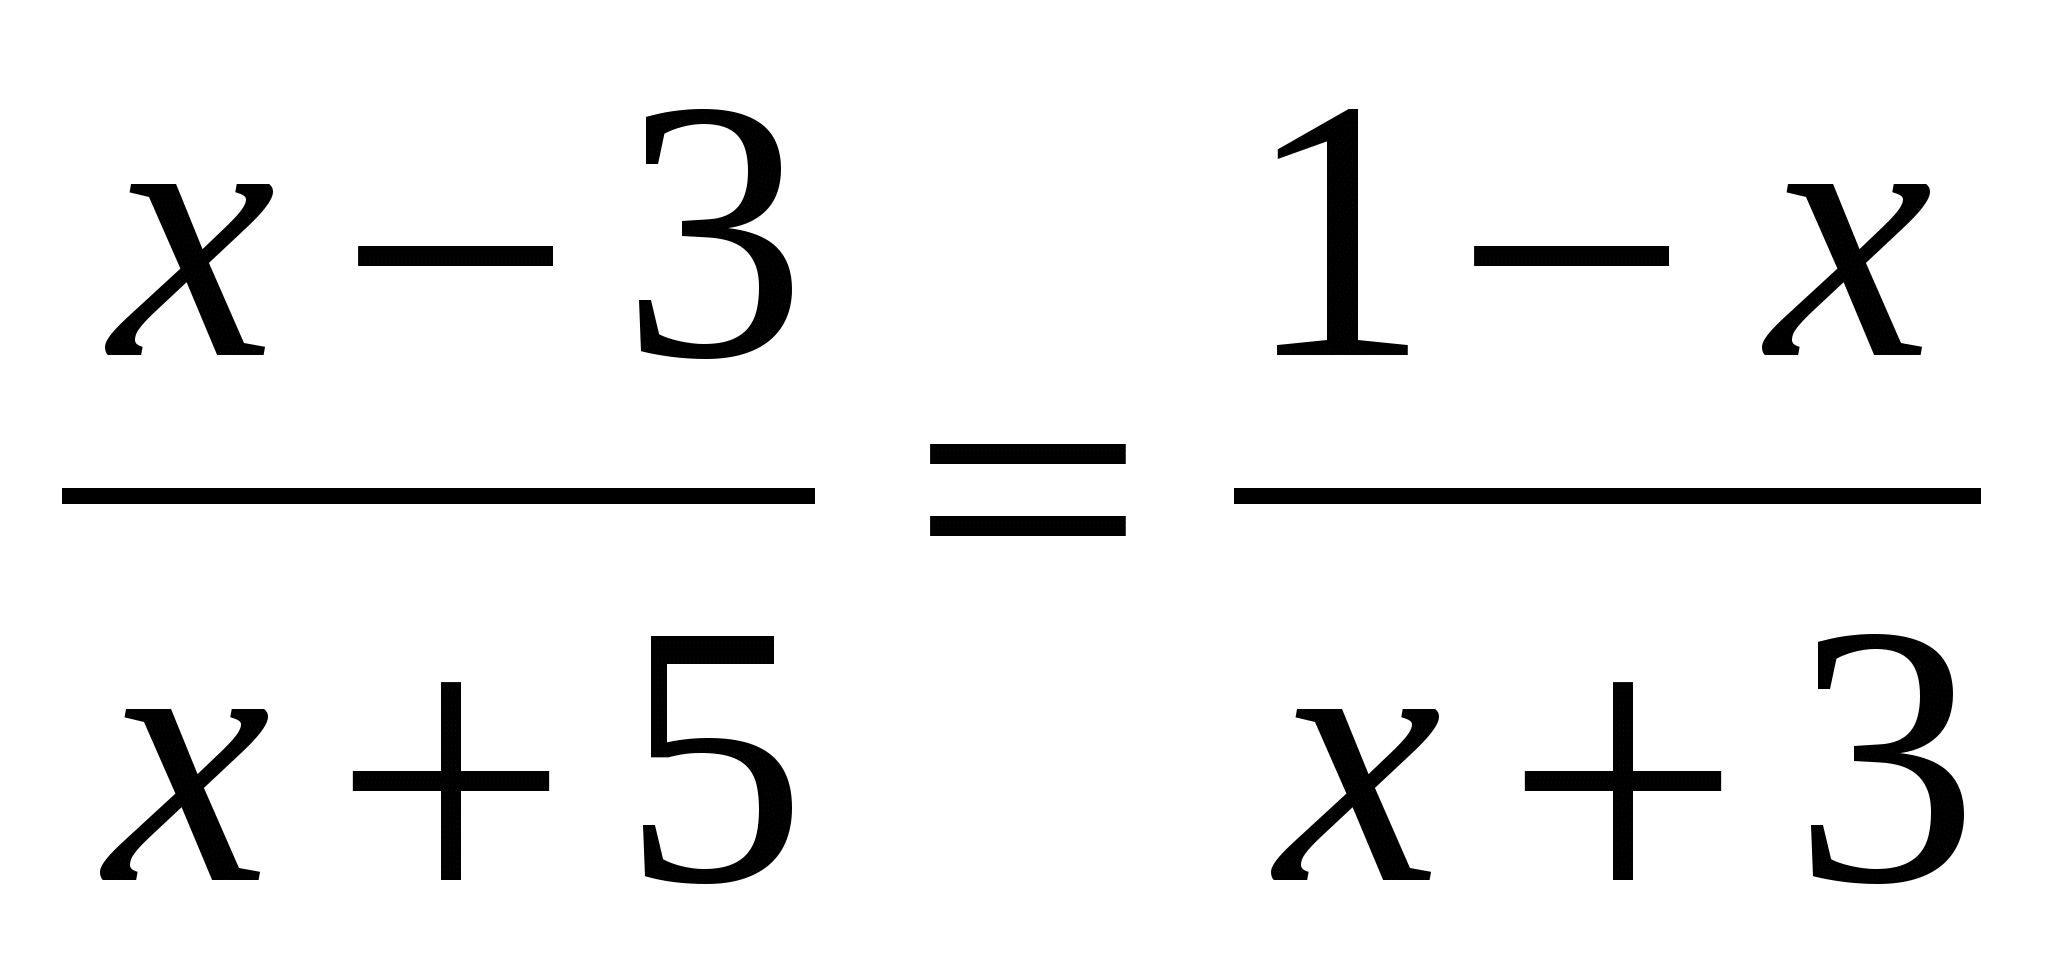 Решение задач с помощью рациональных уравнений